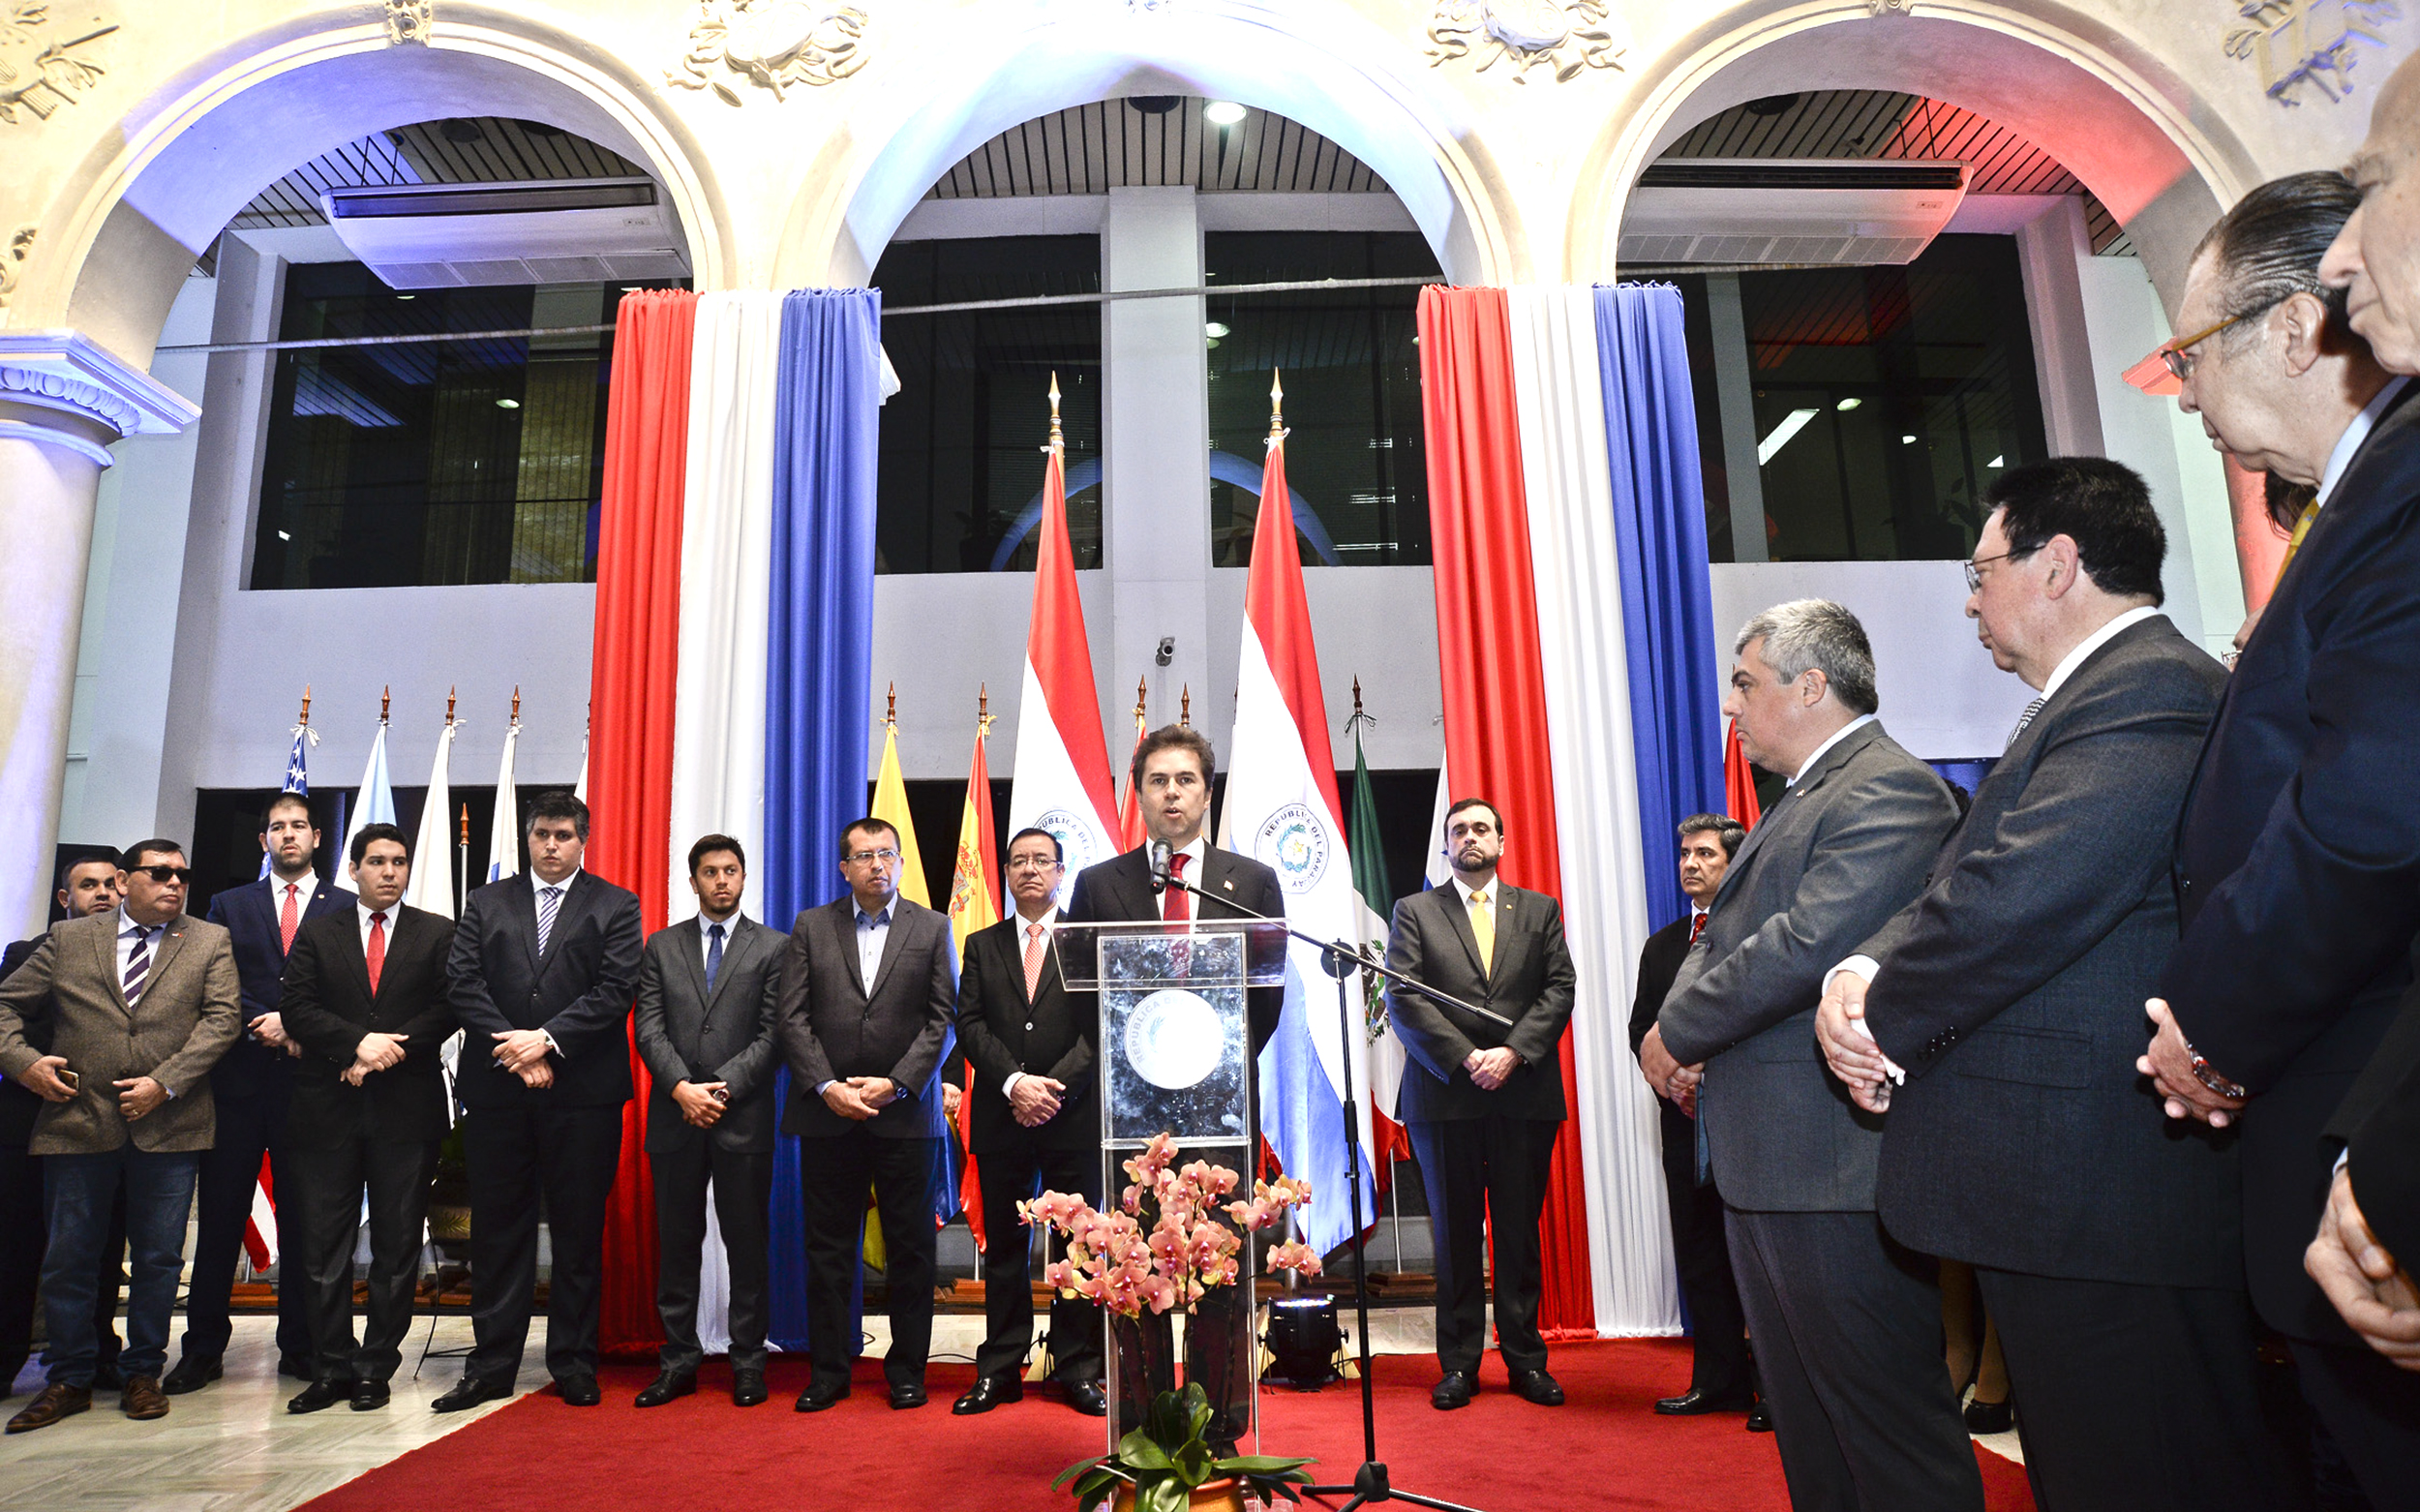 Con el lema “Paraguay primero” tomó posesión de cargo el Ministro de Relaciones Exteriores, Luis Alberto Castiglioni